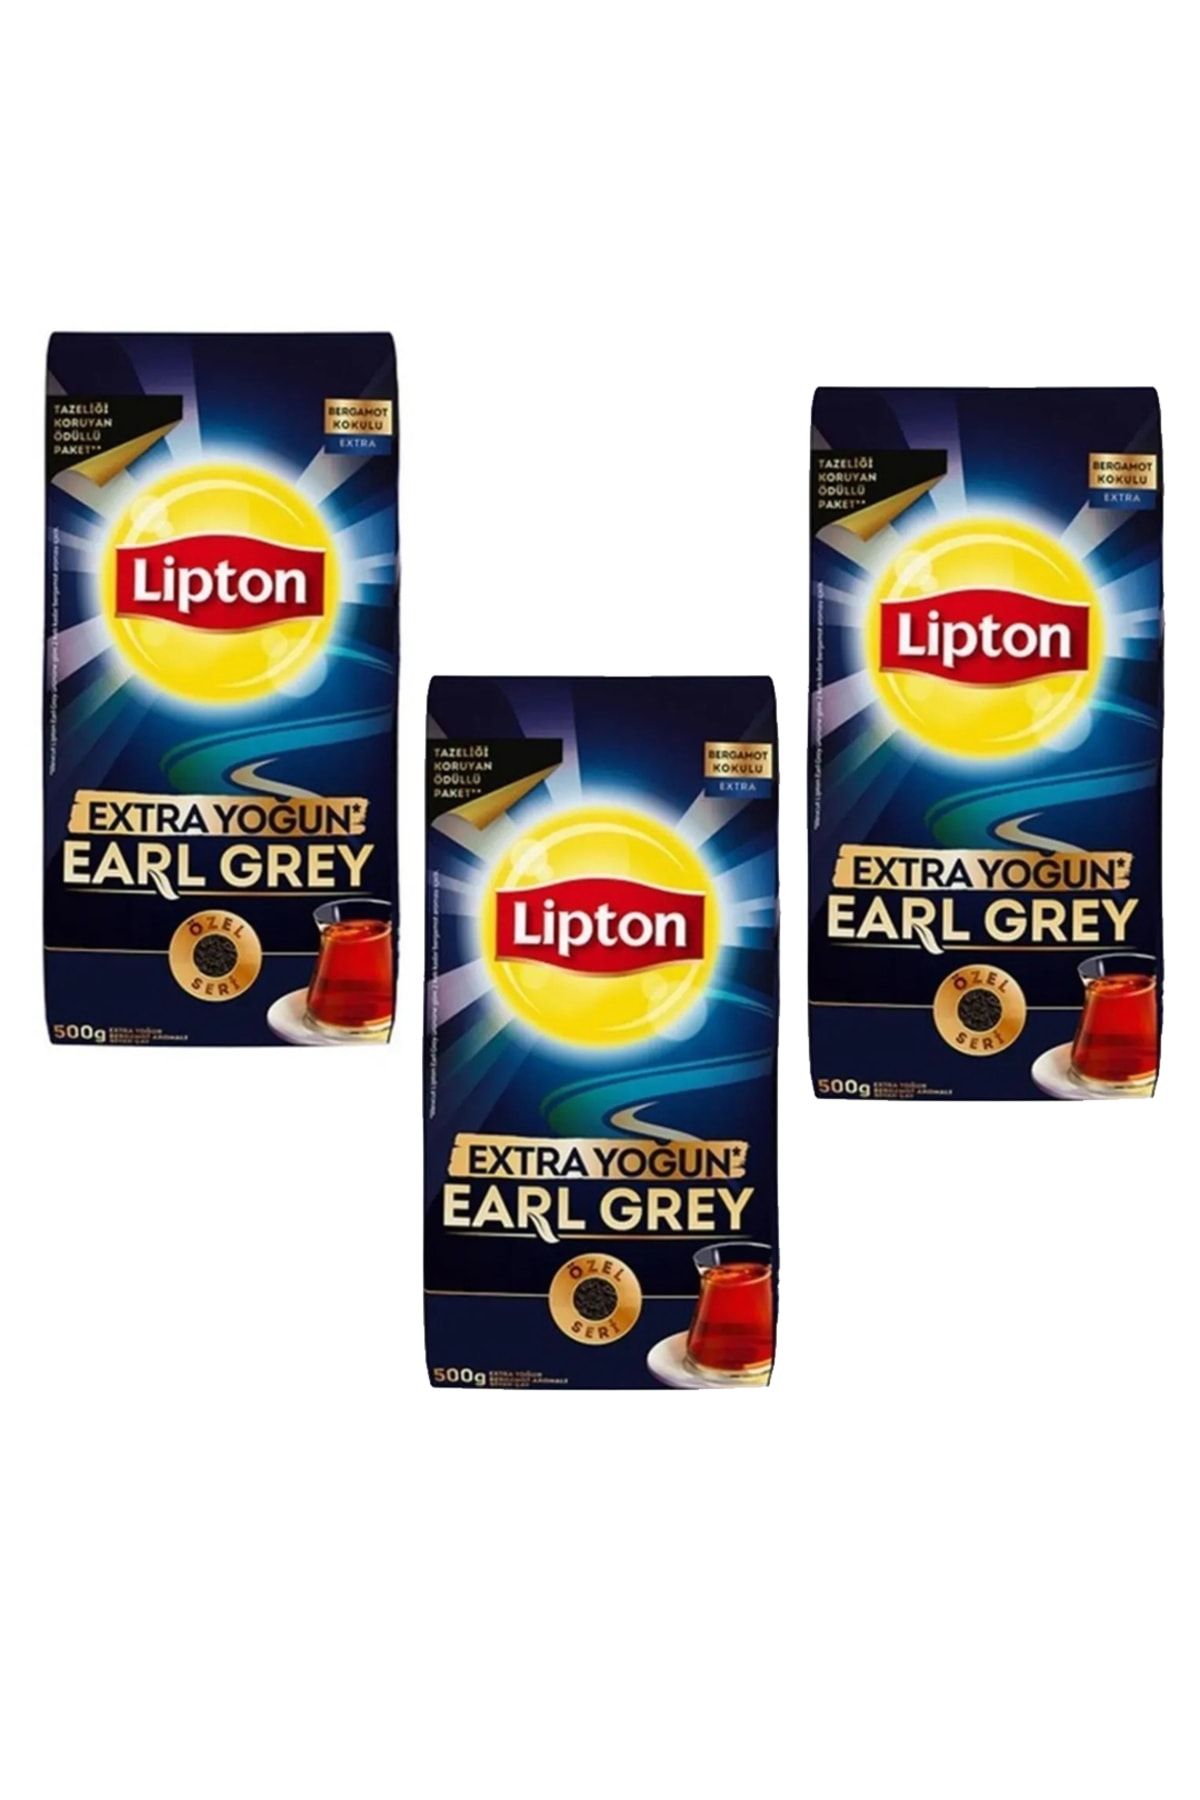 Lipton Extra Yoğun Earl Grey Bergamot Aromalı Siyah Dökme Çay 500gr 3 Adet